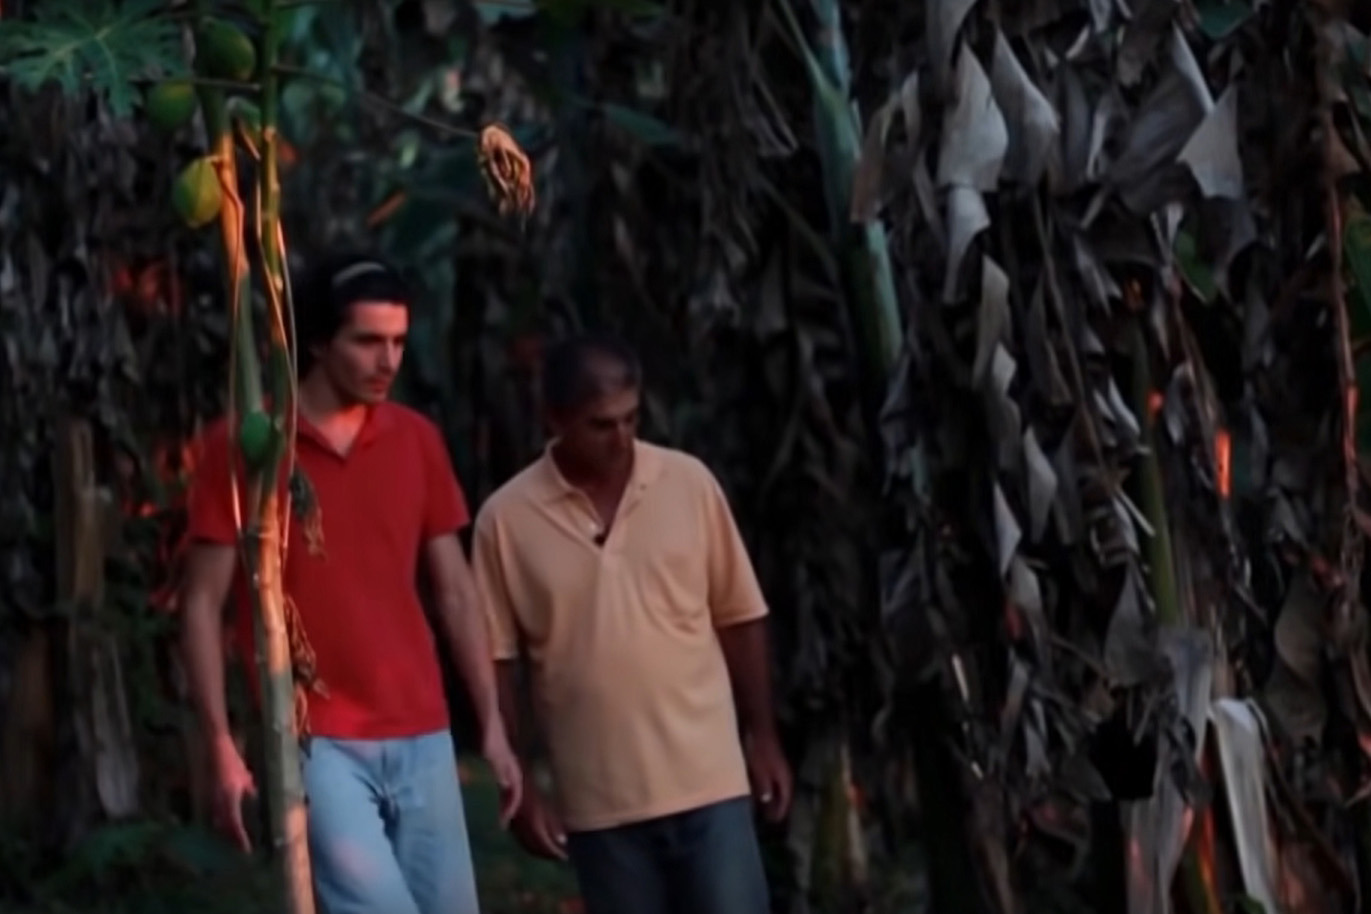 Fotografia extraída do documentário “O Uso Inseguro dos Agrotóxicos”